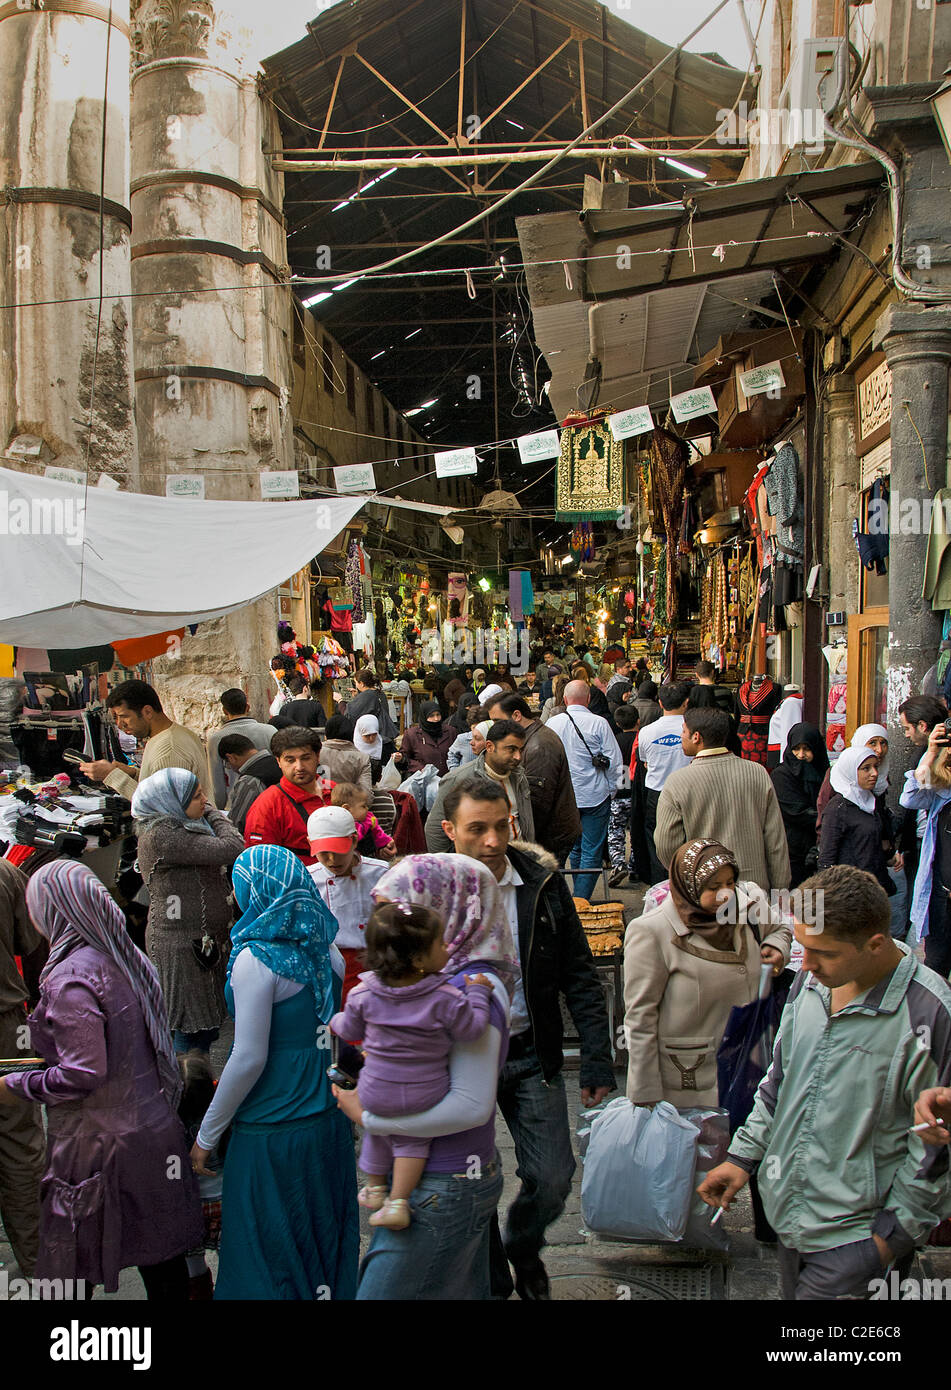 A Damasco in Siria Bazaar Souk Souq market shop Foto Stock